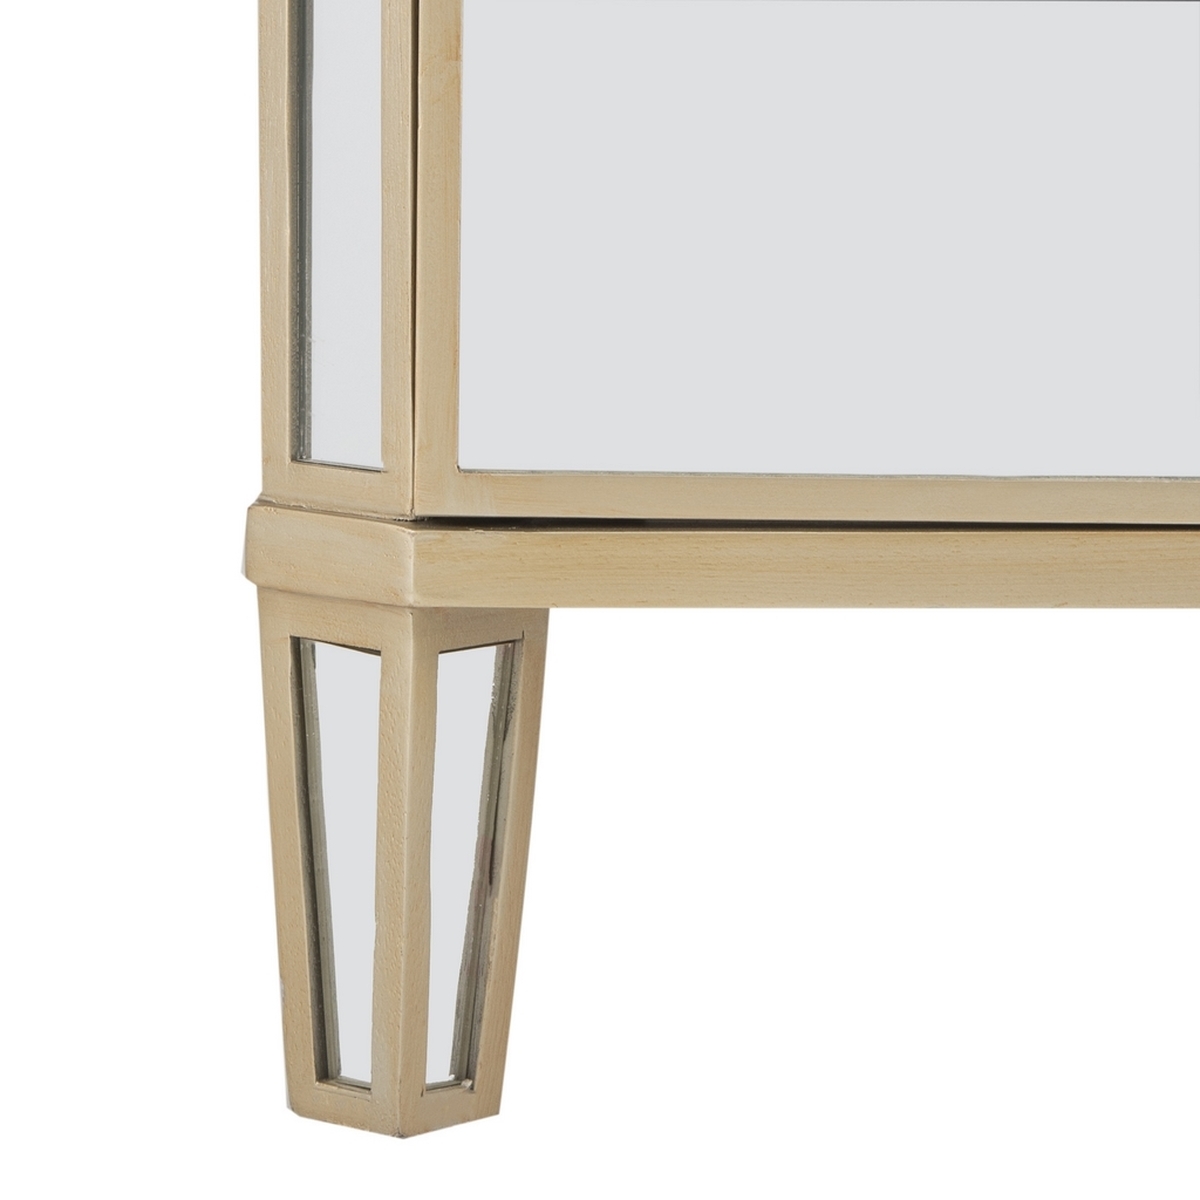 Giana 3 Drawer Mirrored Nightstand - Mirror - Arlo Home - Image 4